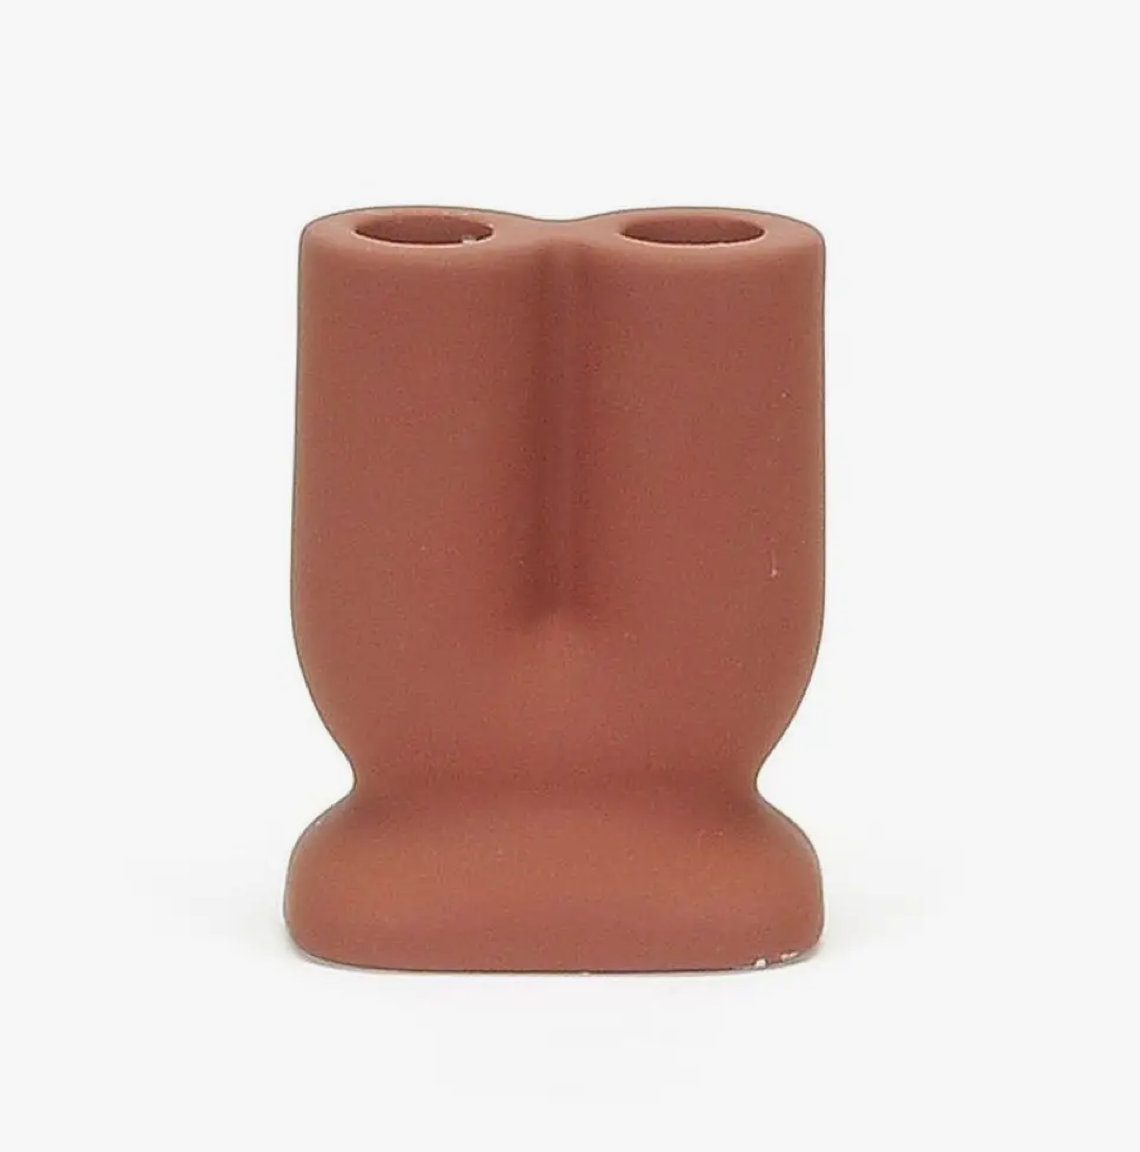 u-shaped candle holder